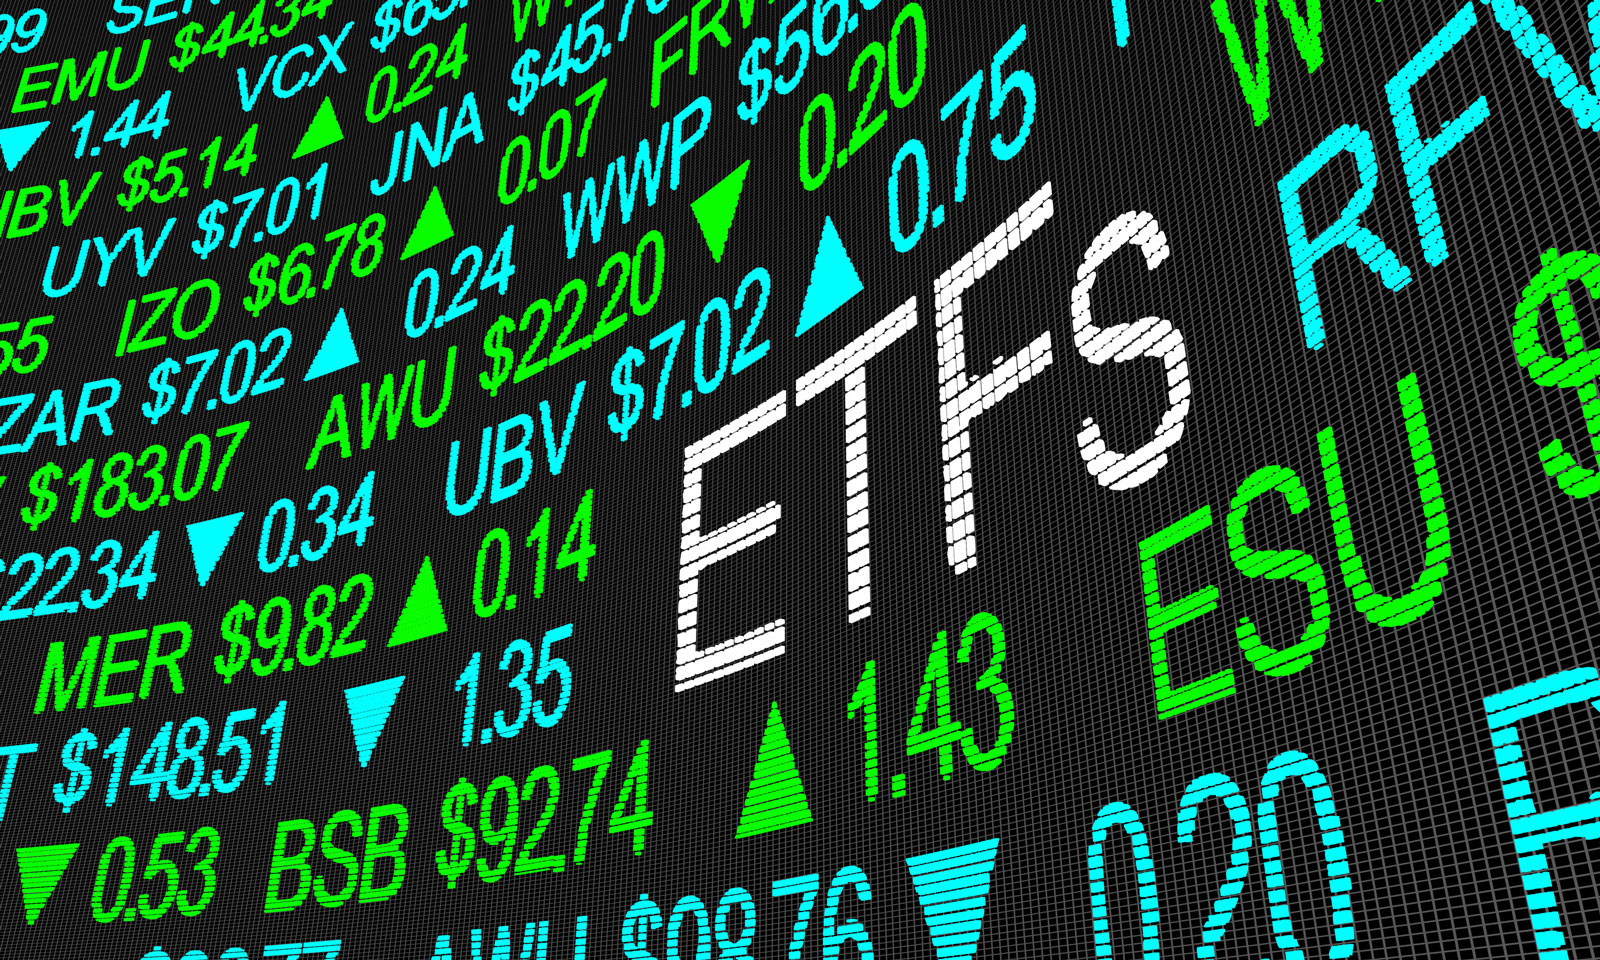 Fundos de Índices: O que são e como investir em ETFs